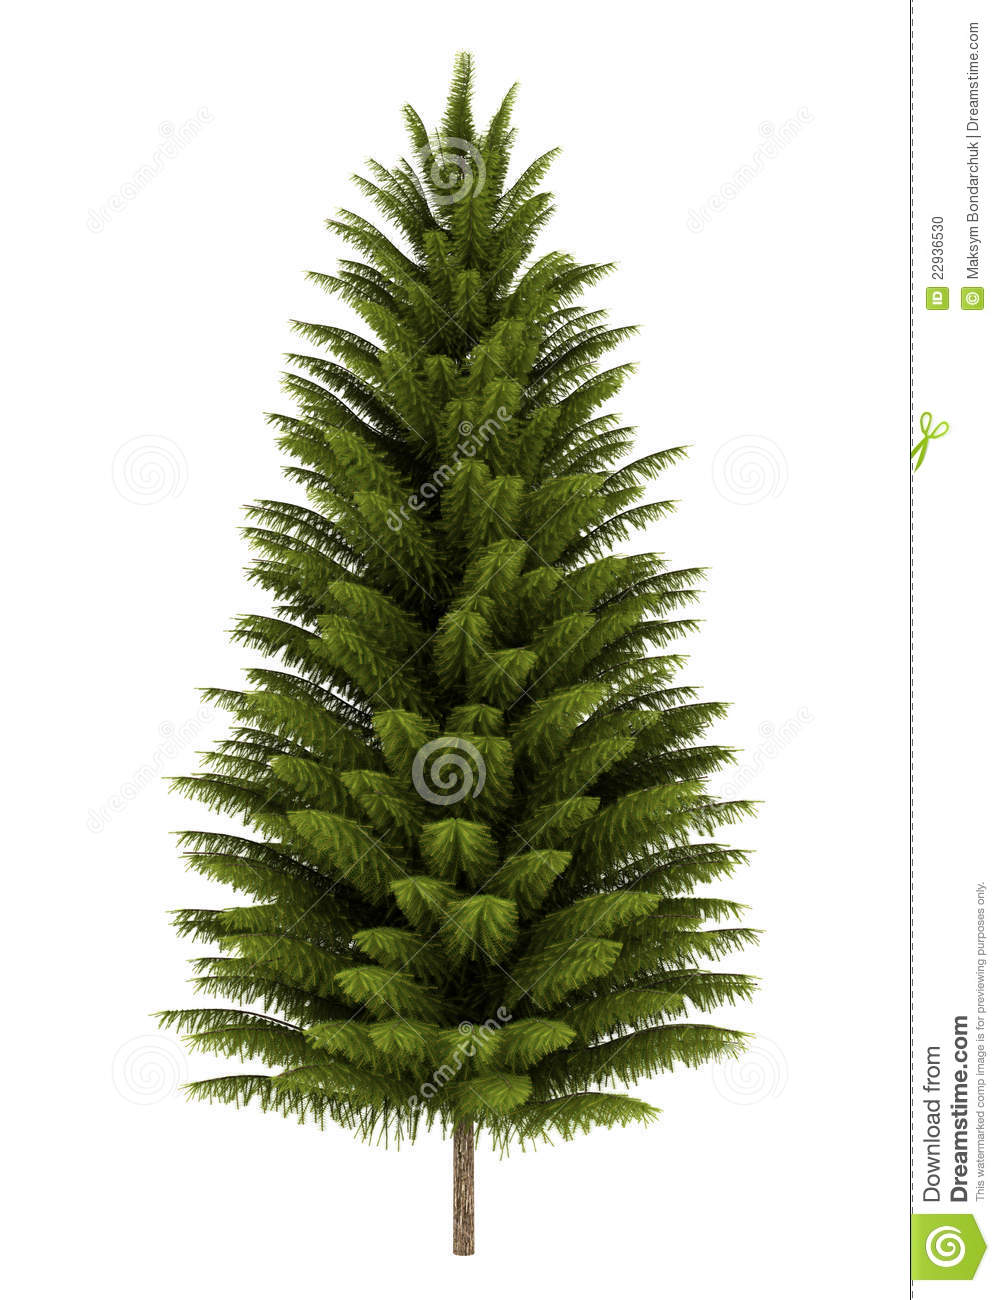 Norway Spruce Tree Isolated On White Stock Photo   Image  22936530